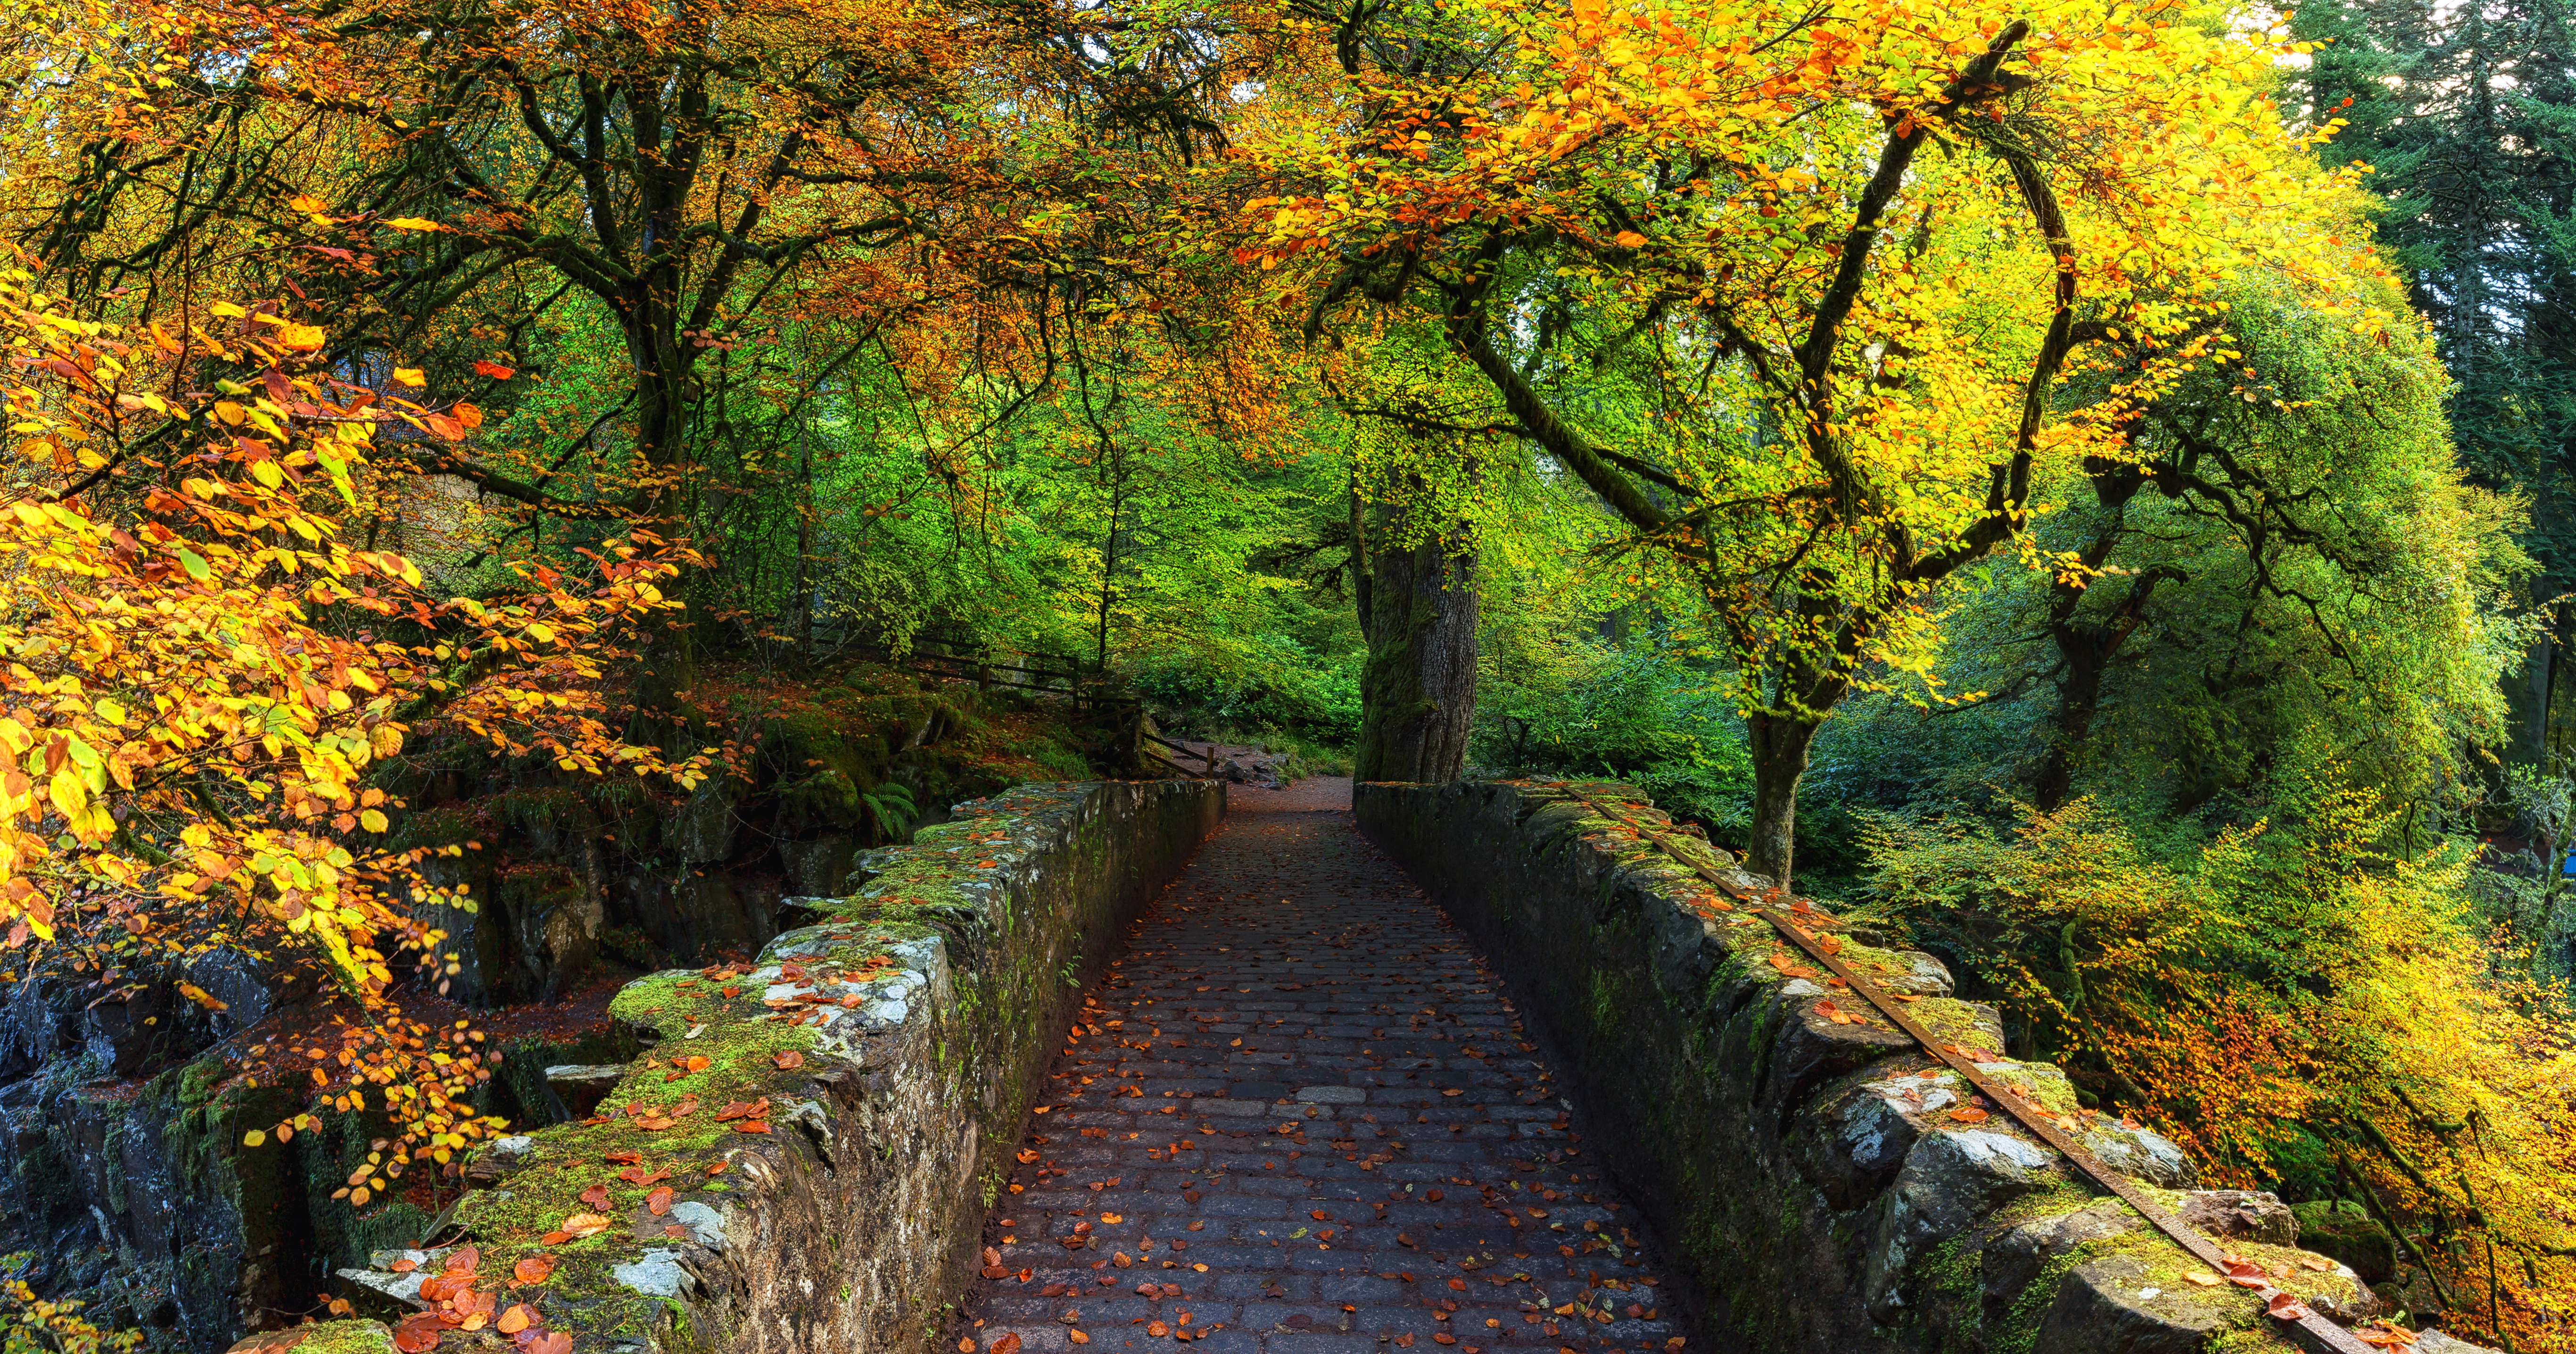 免费照片苏格兰 - 秋天的颜色